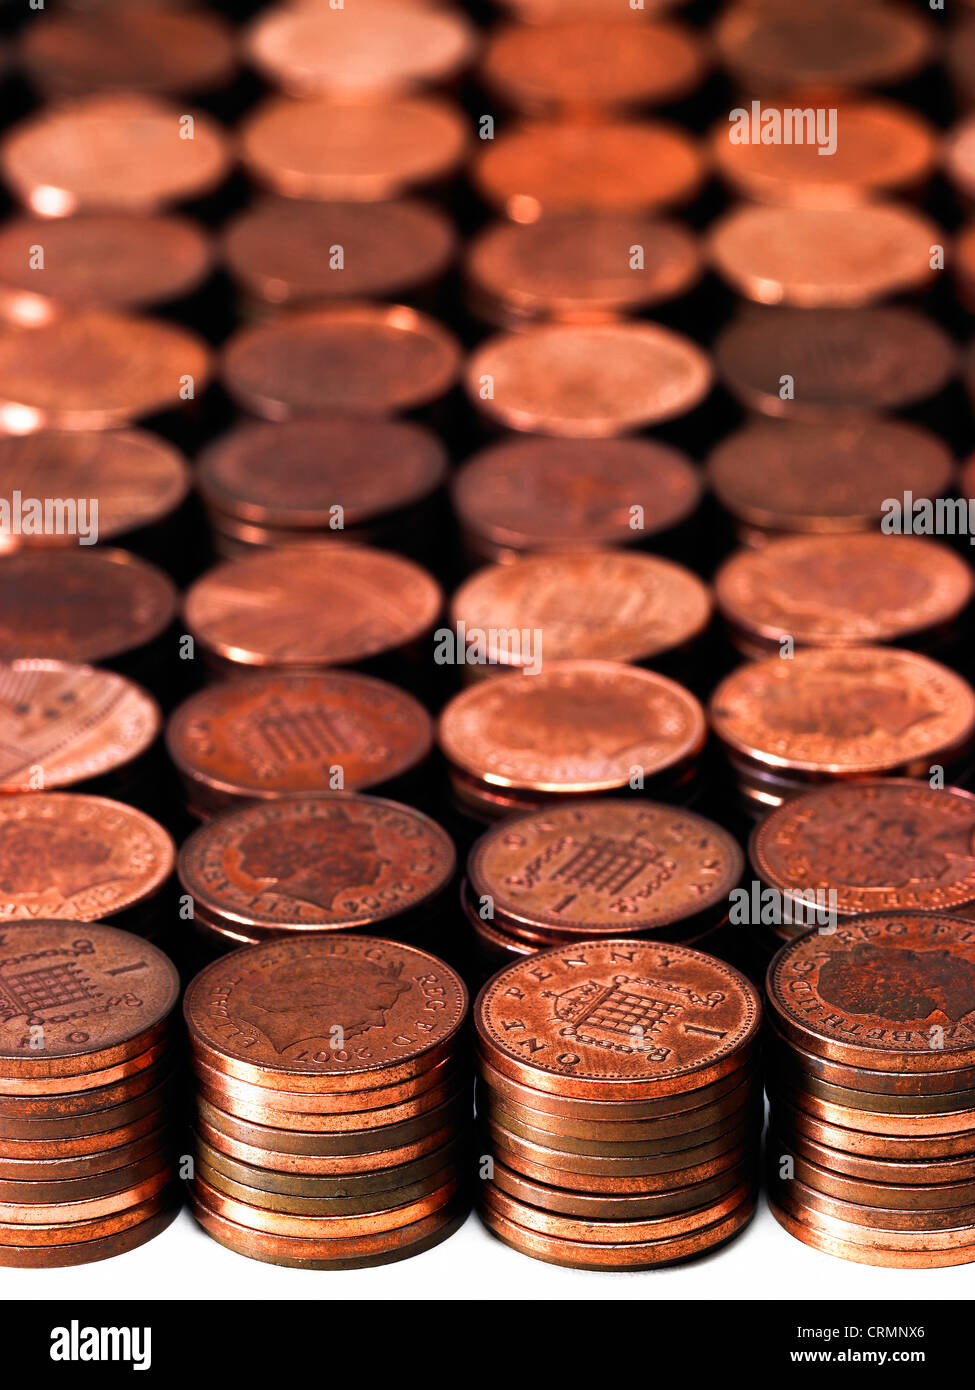 Prolijas pilas de British centavos Foto de stock